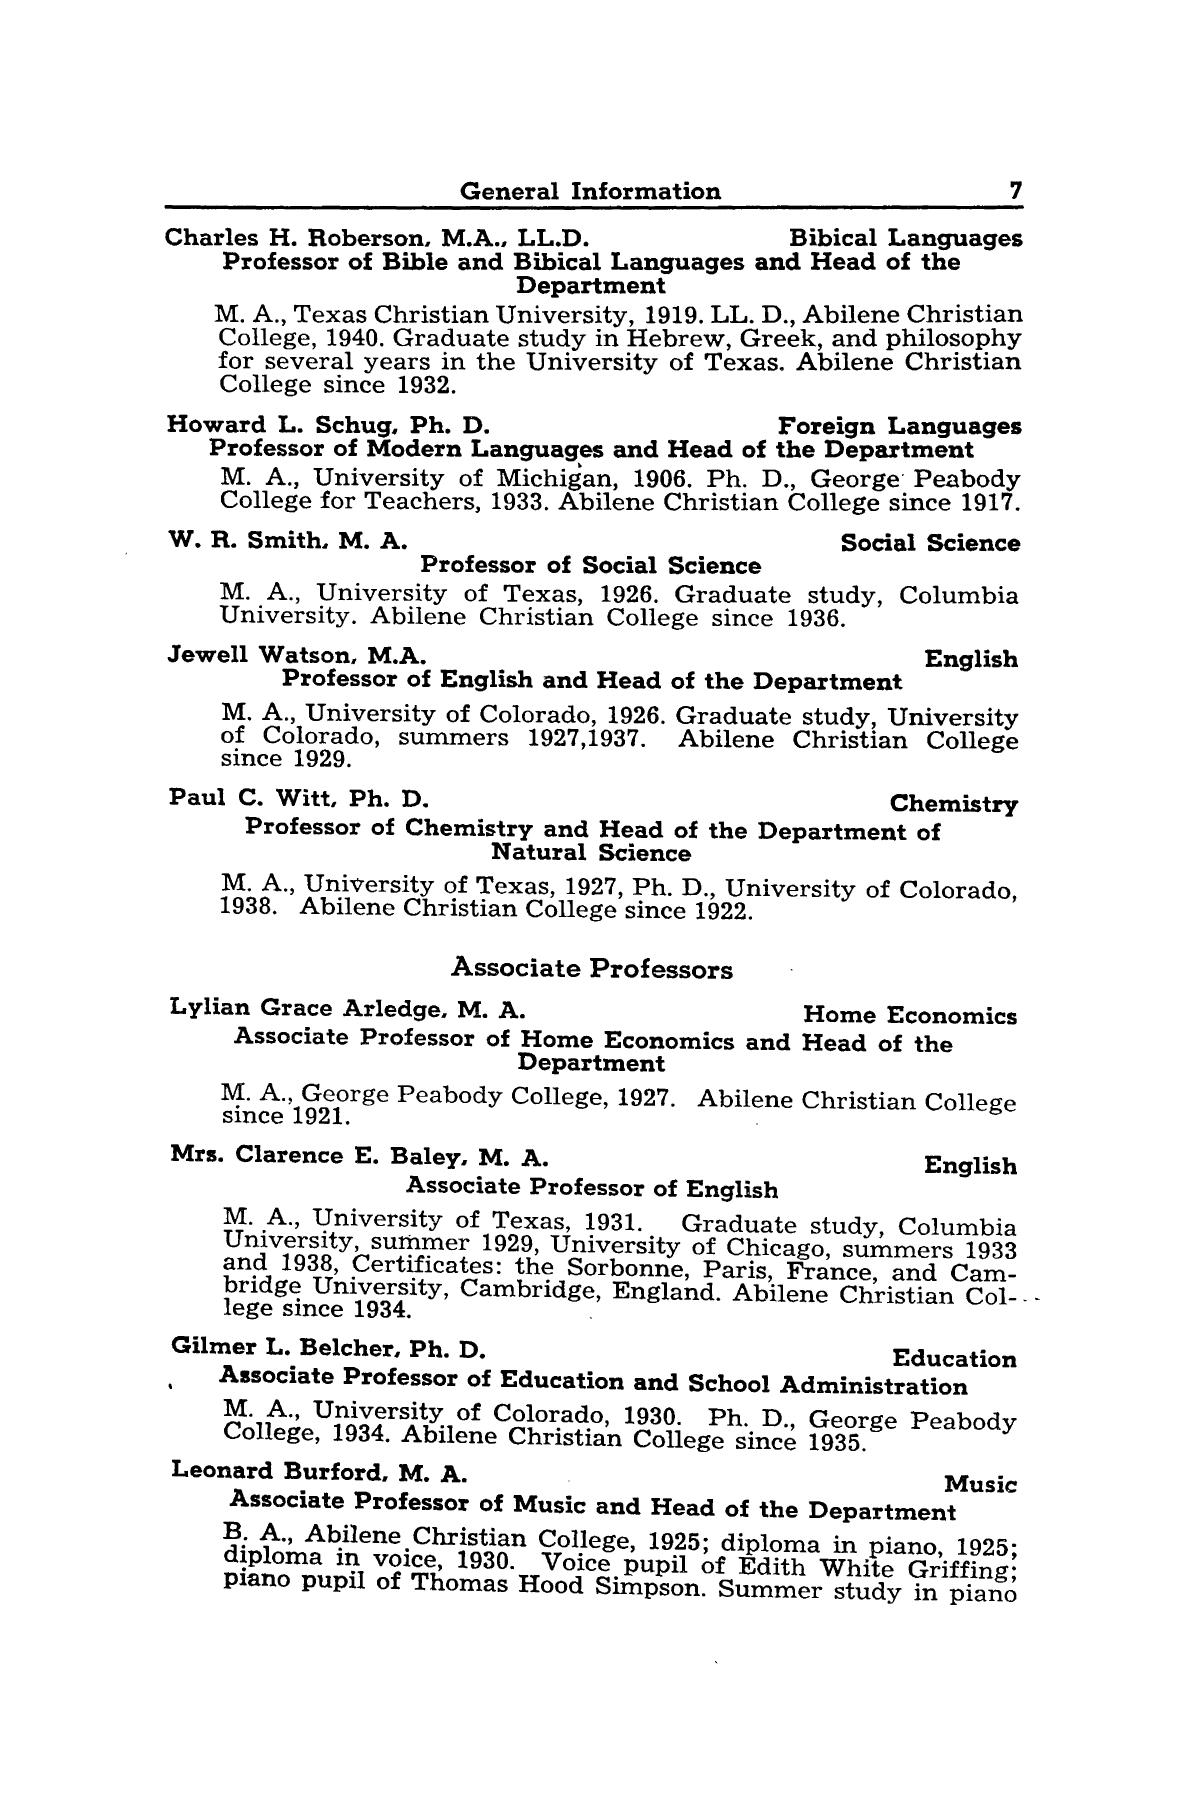 Catalog of Abilene Christian College, 1942-1943
                                                
                                                    7
                                                